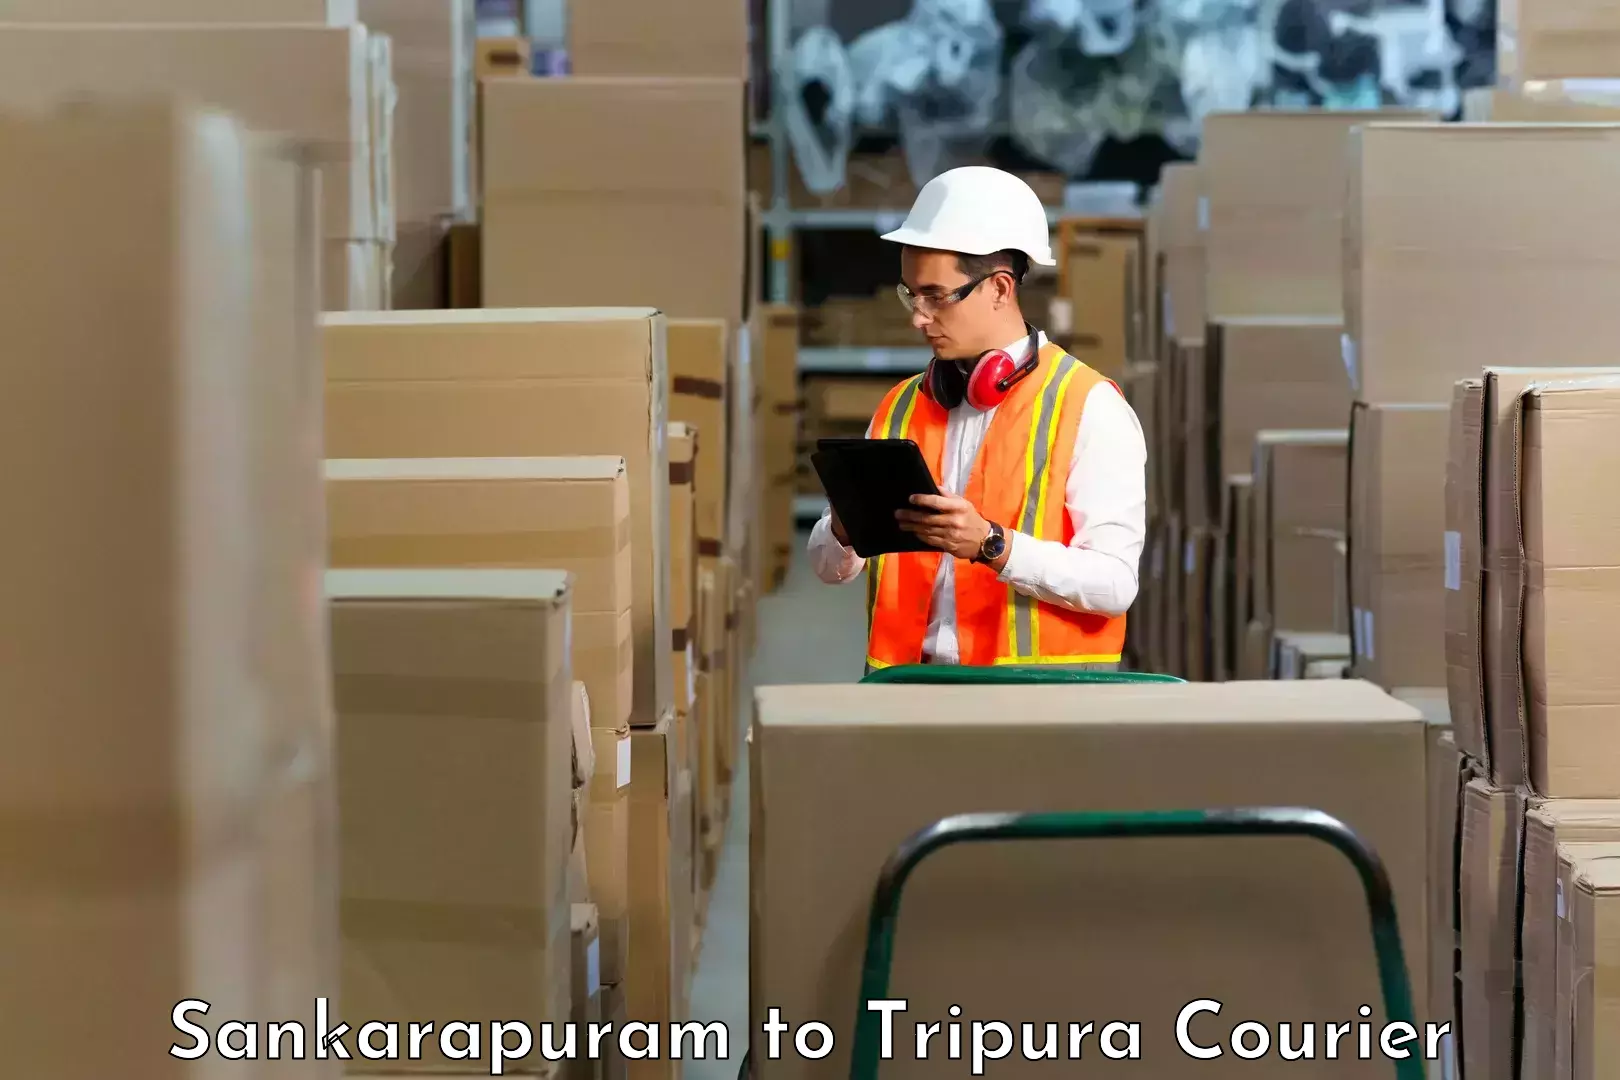 High-capacity parcel service Sankarapuram to Dhalai